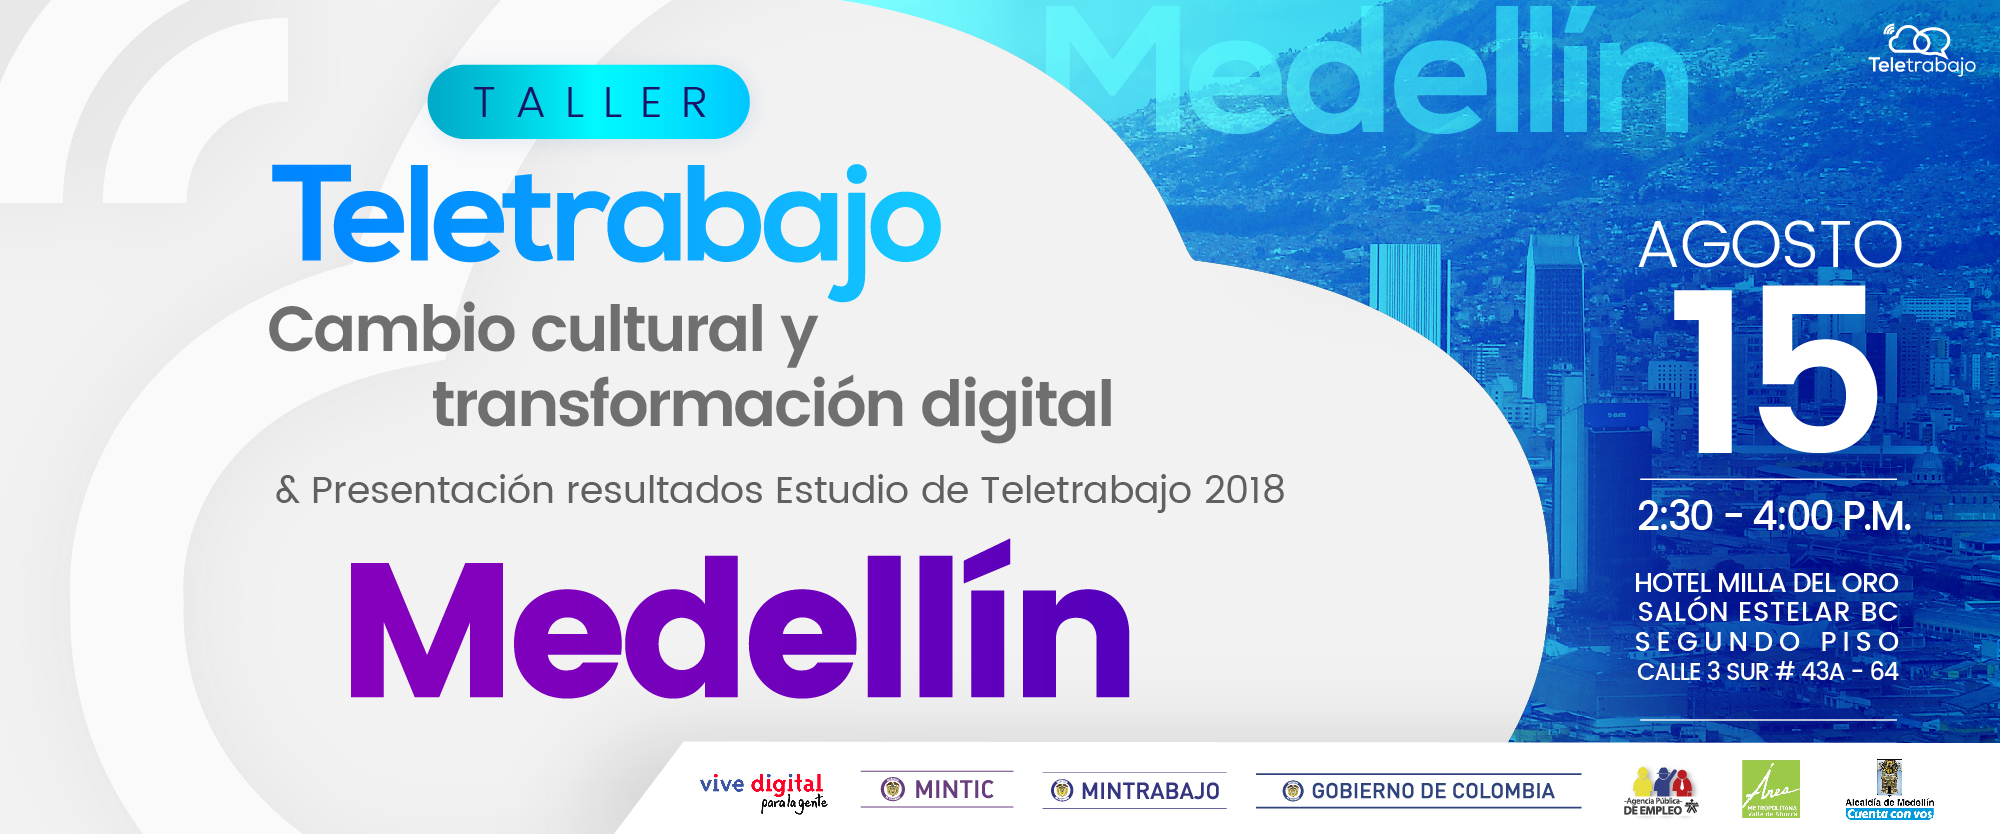 Medellín Teletrabaja: Taller para su implementación y presentación de resultados nuevo Estudio